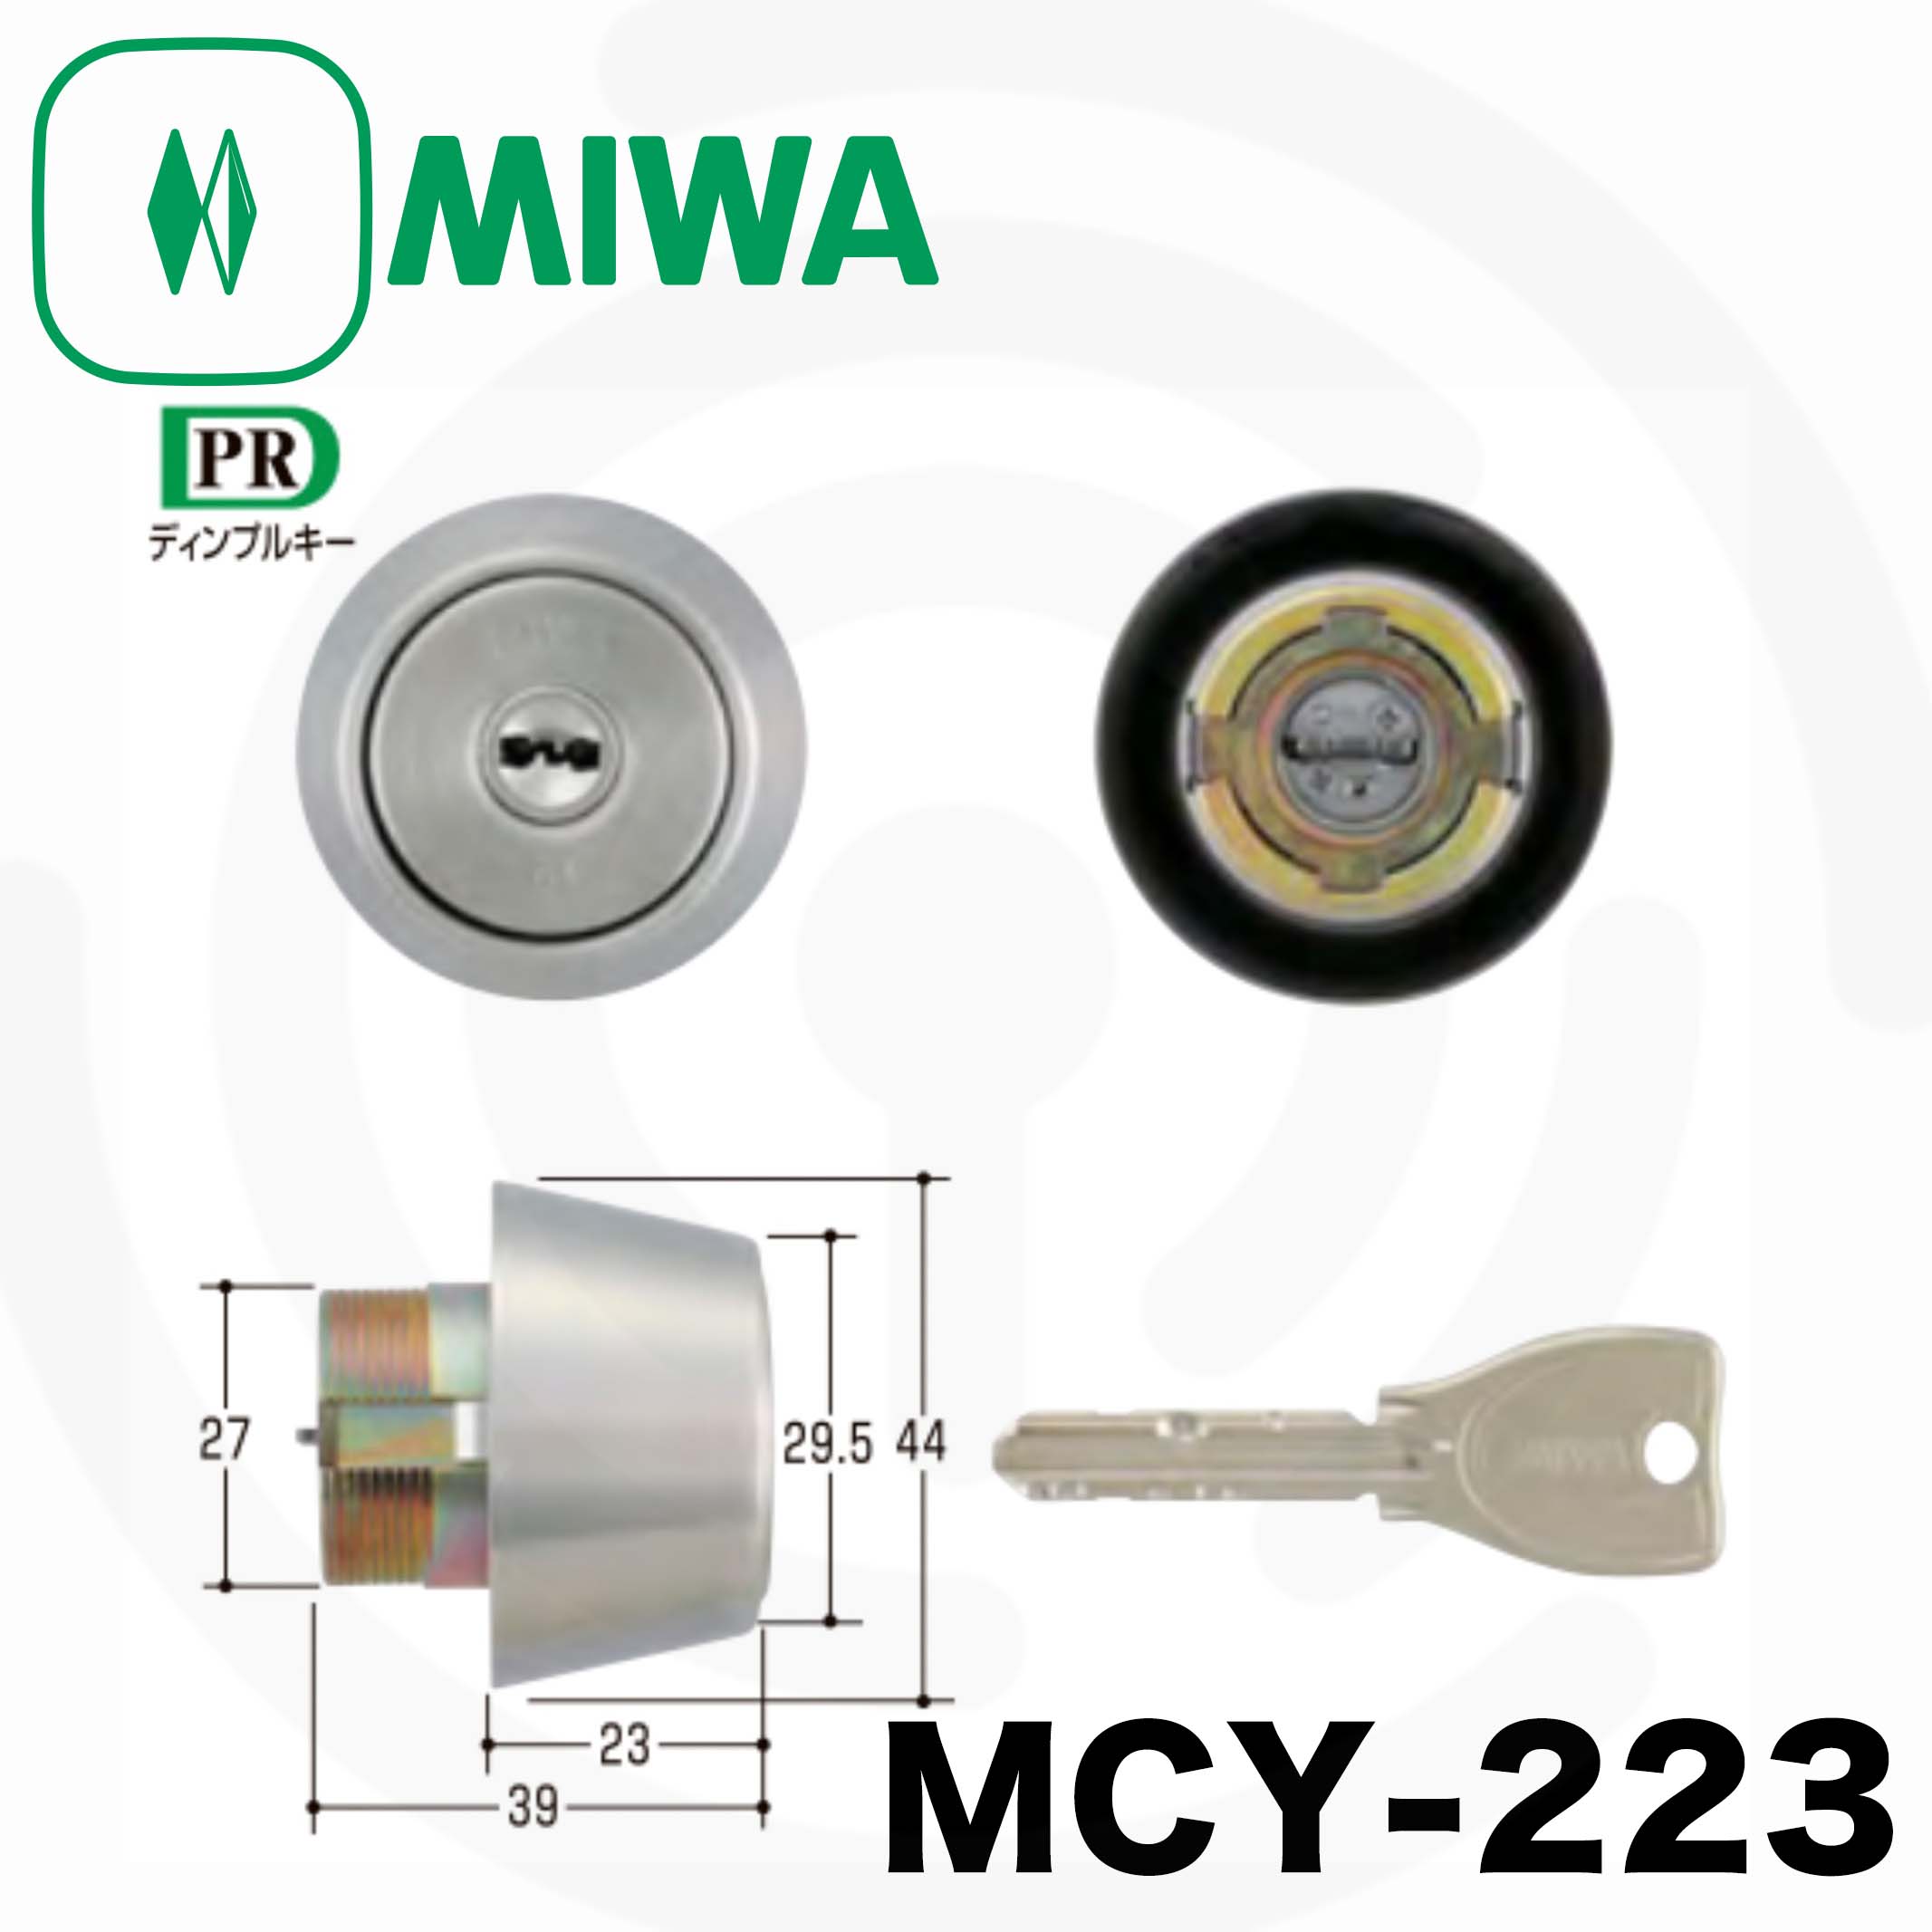 MIWA(美和ロック) U9シリンダー LIX(TE0)タイプ LSP(TE22)タイプ 鍵 交換 取替え 2個同一セット MCY-402ス - 2